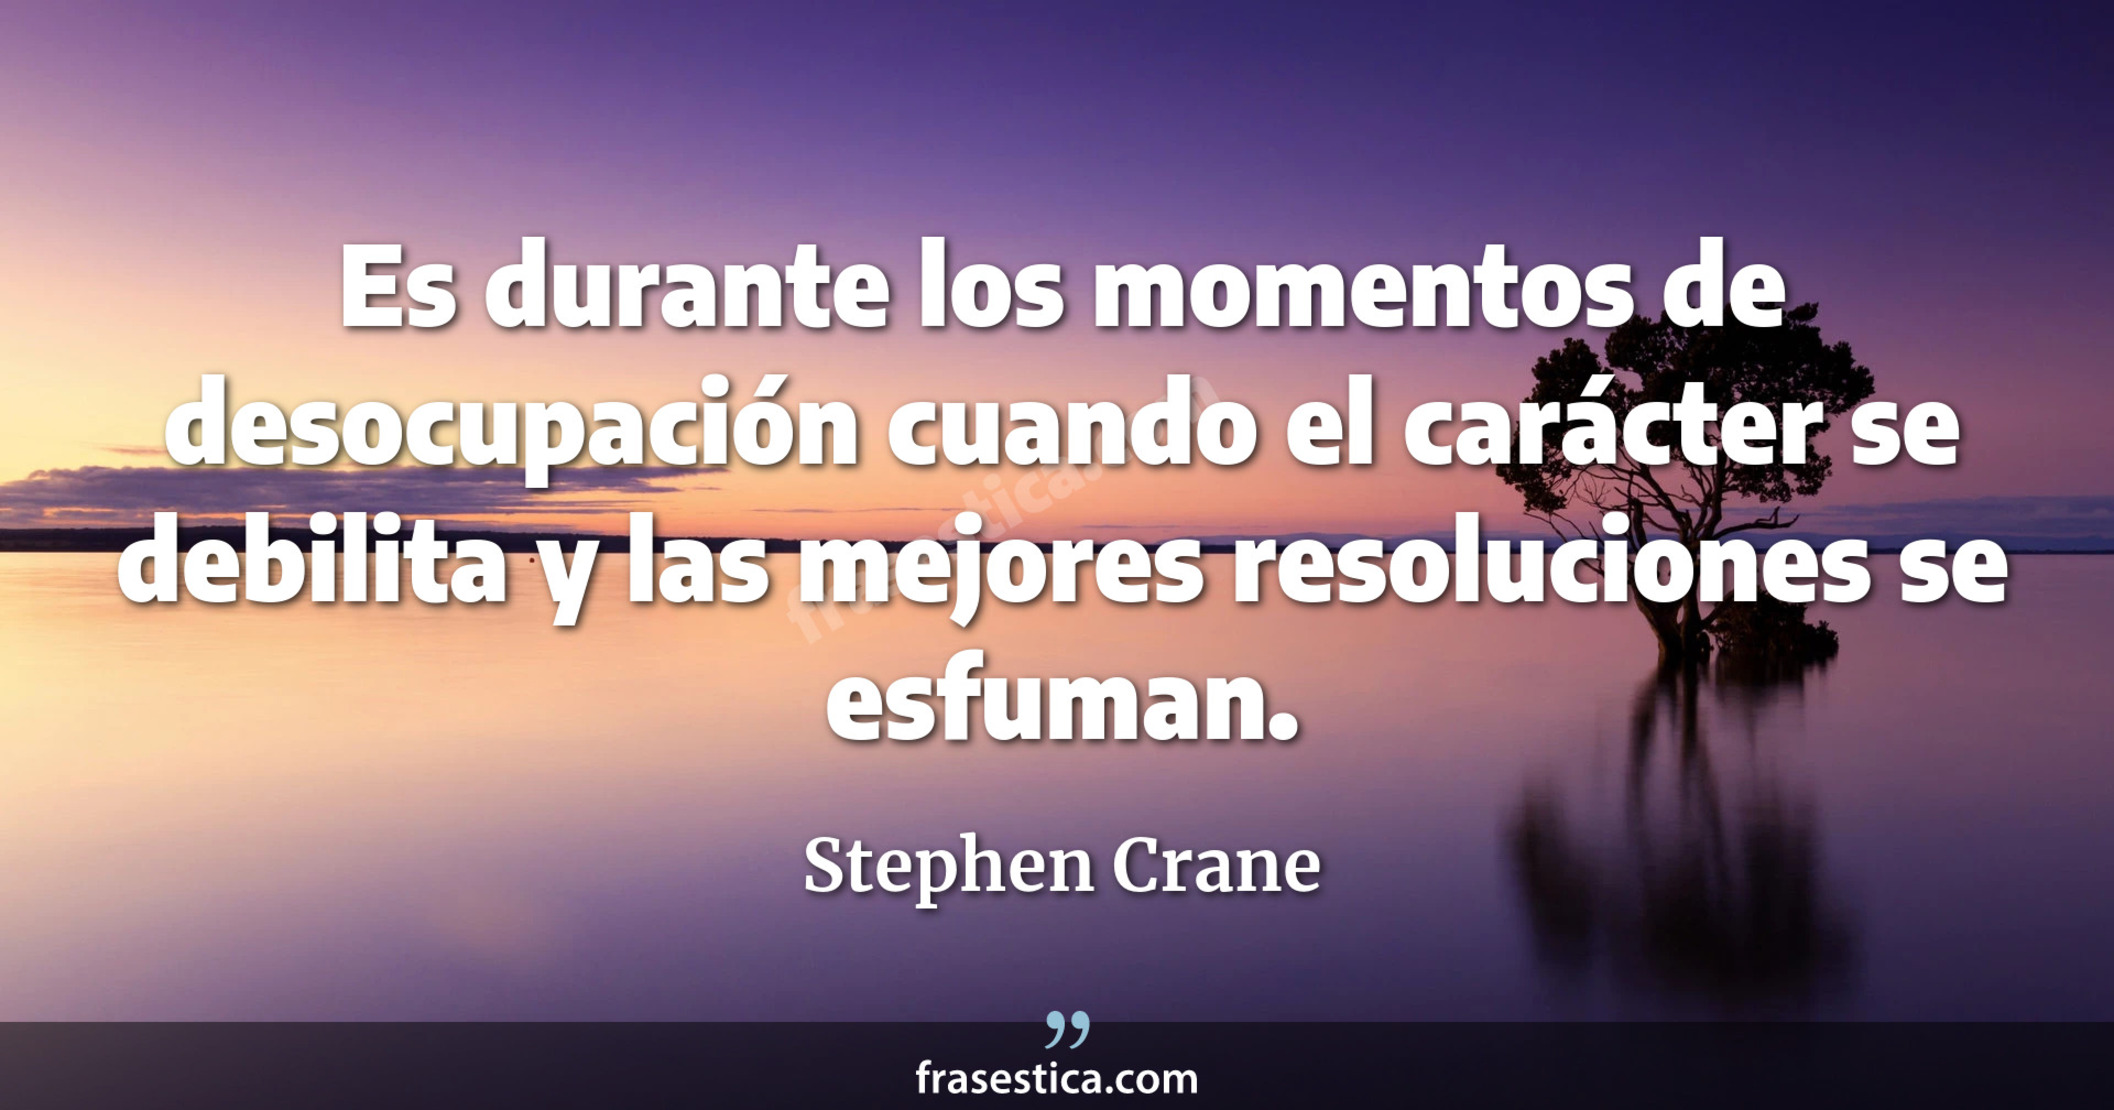 Es durante los momentos de desocupación cuando el carácter se debilita y las mejores resoluciones se esfuman. - Stephen Crane